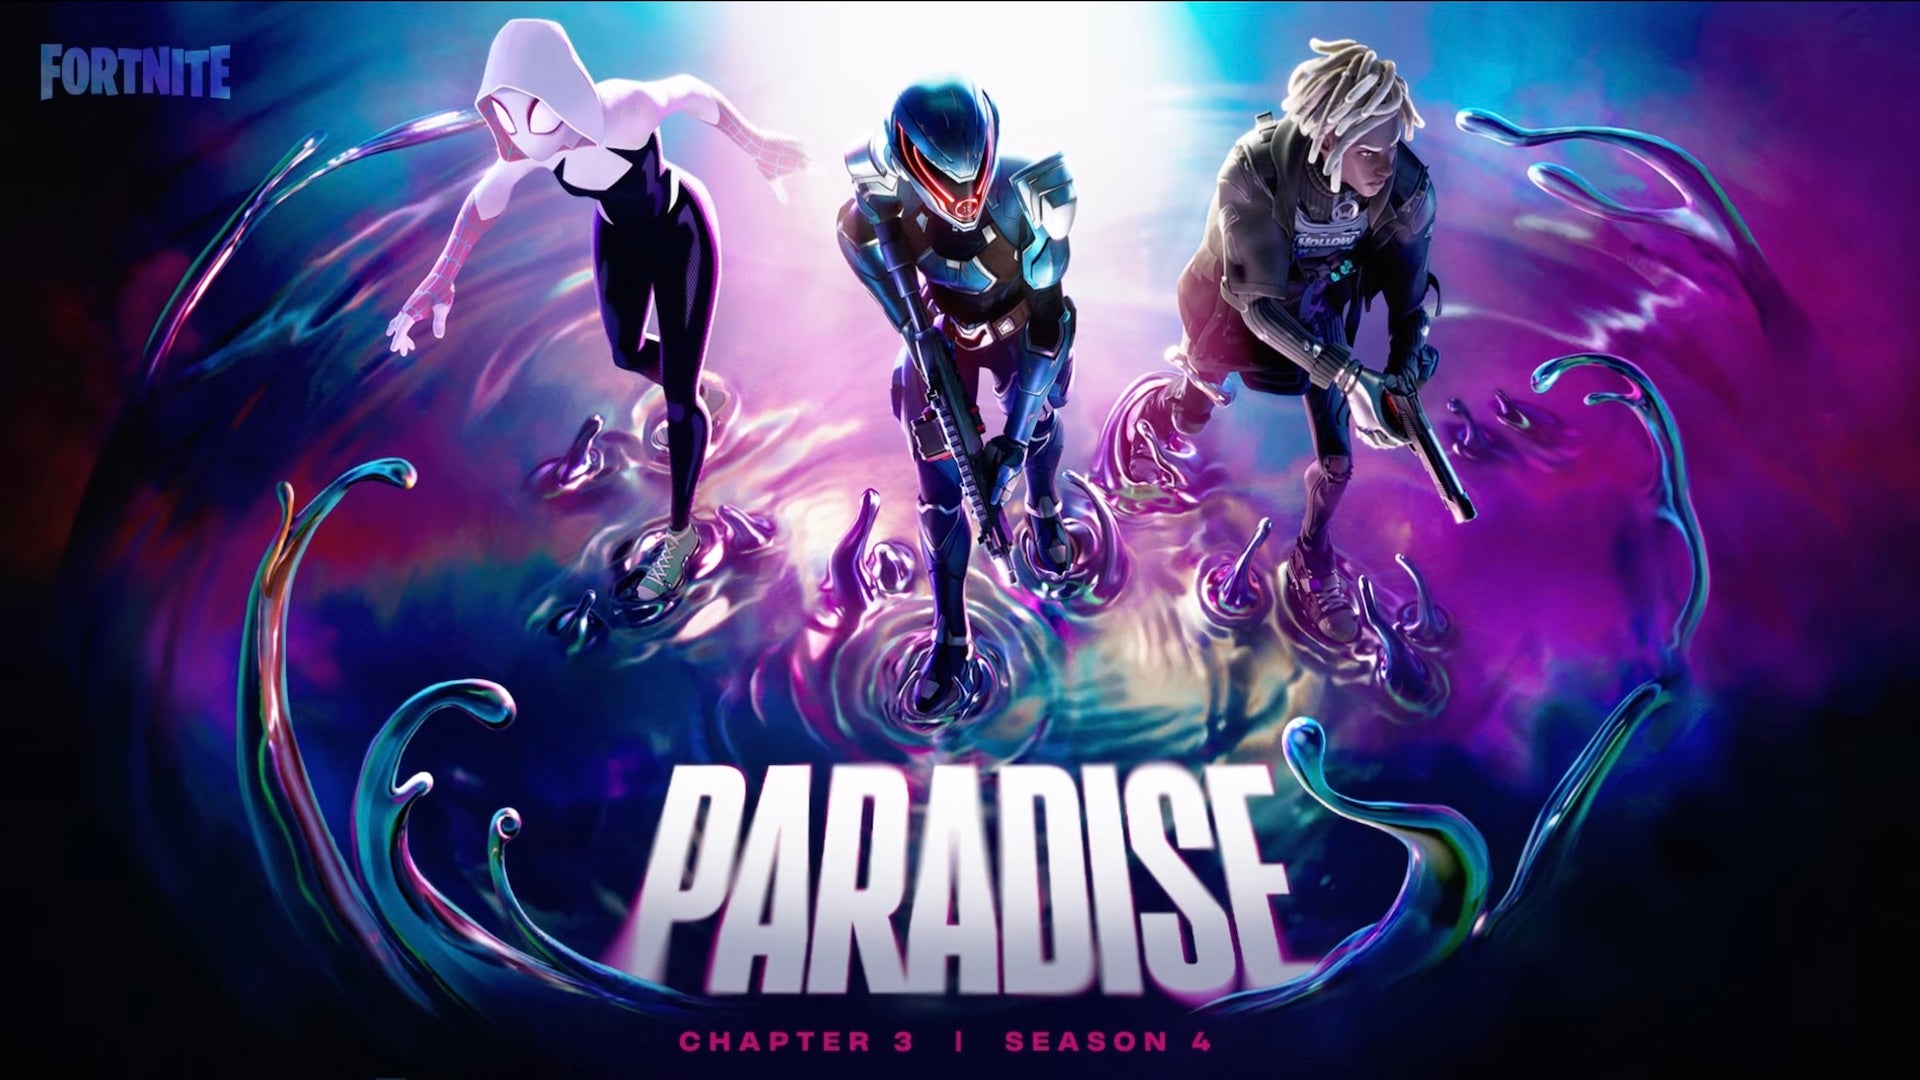 Imagen para Fortnite Capítulo 3 Temporada 4: Skins del Pase de batalla de Paraíso, incluyendo Spider-Gwen, La Paradigma y Twyn